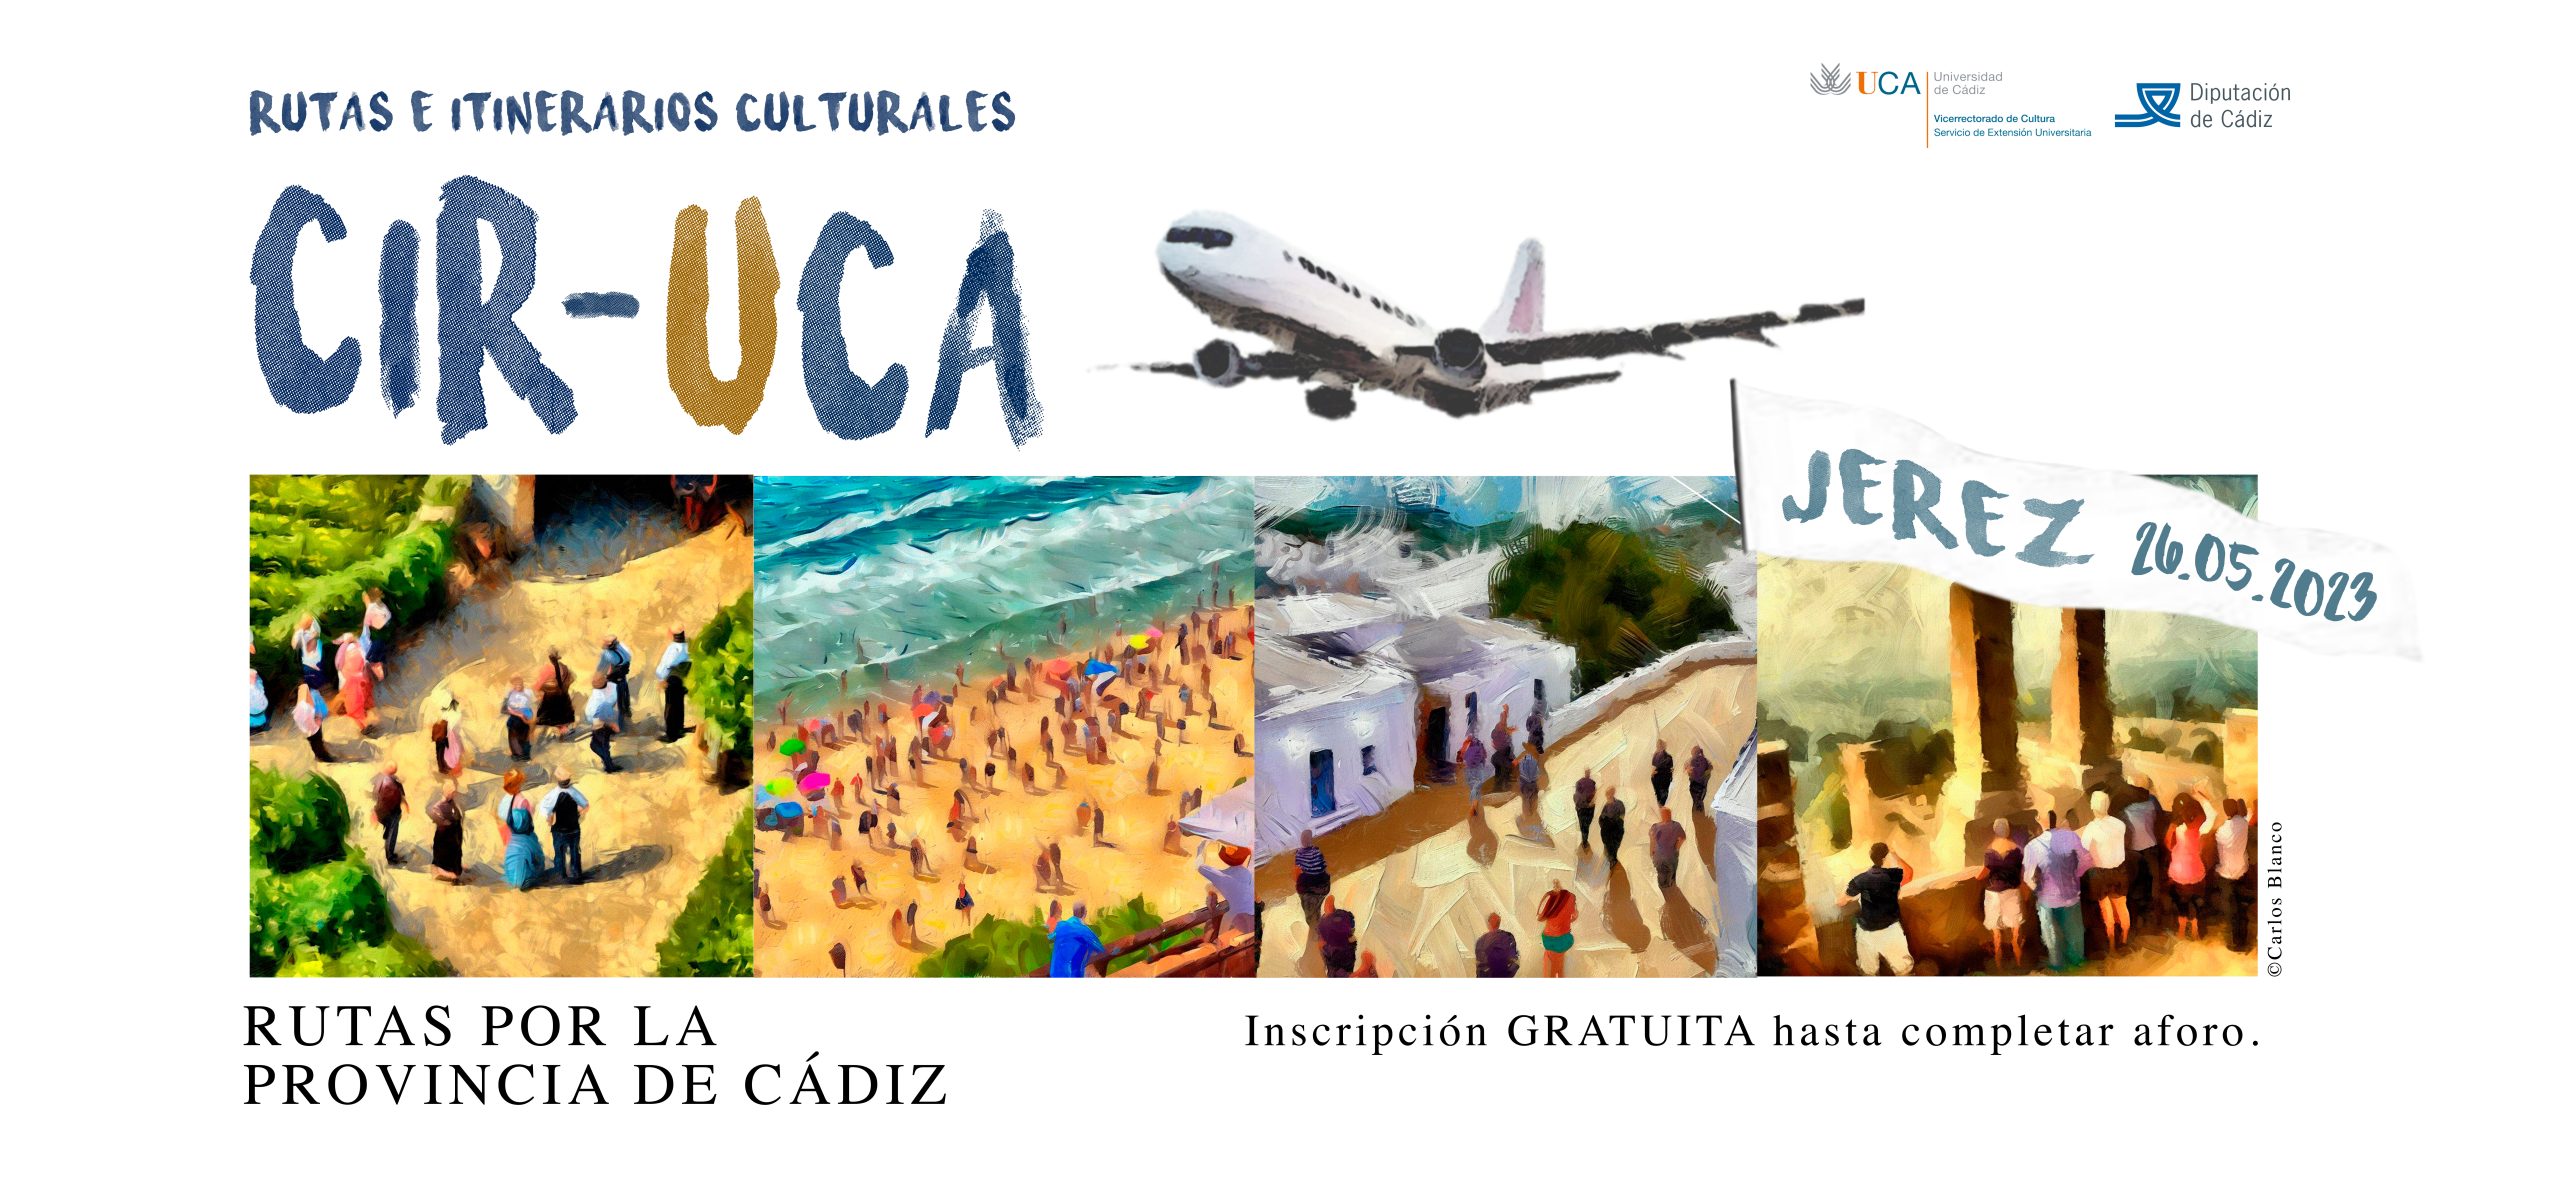 Visita a la ciudad de Jerez, segunda propuesta del programa Rutas e Itinerarios Culturales “CIR-UCA” de los vicerrectorados de Cultura e Internacionalización